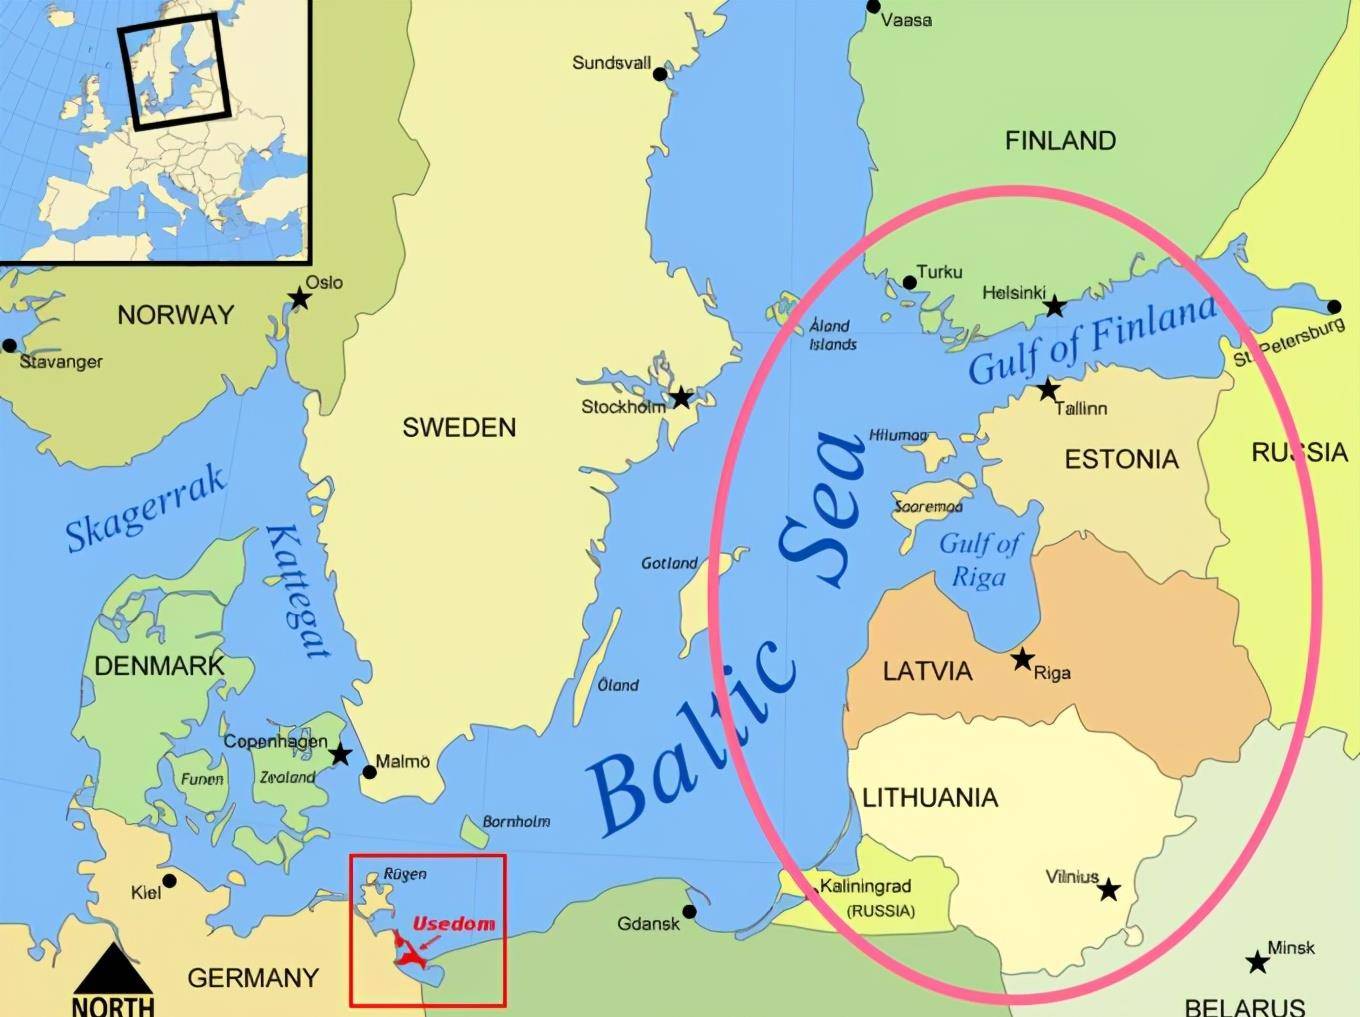 其实另外3个国家是指波罗的海三国,是波罗的海沿岸的立陶宛,拉脱维